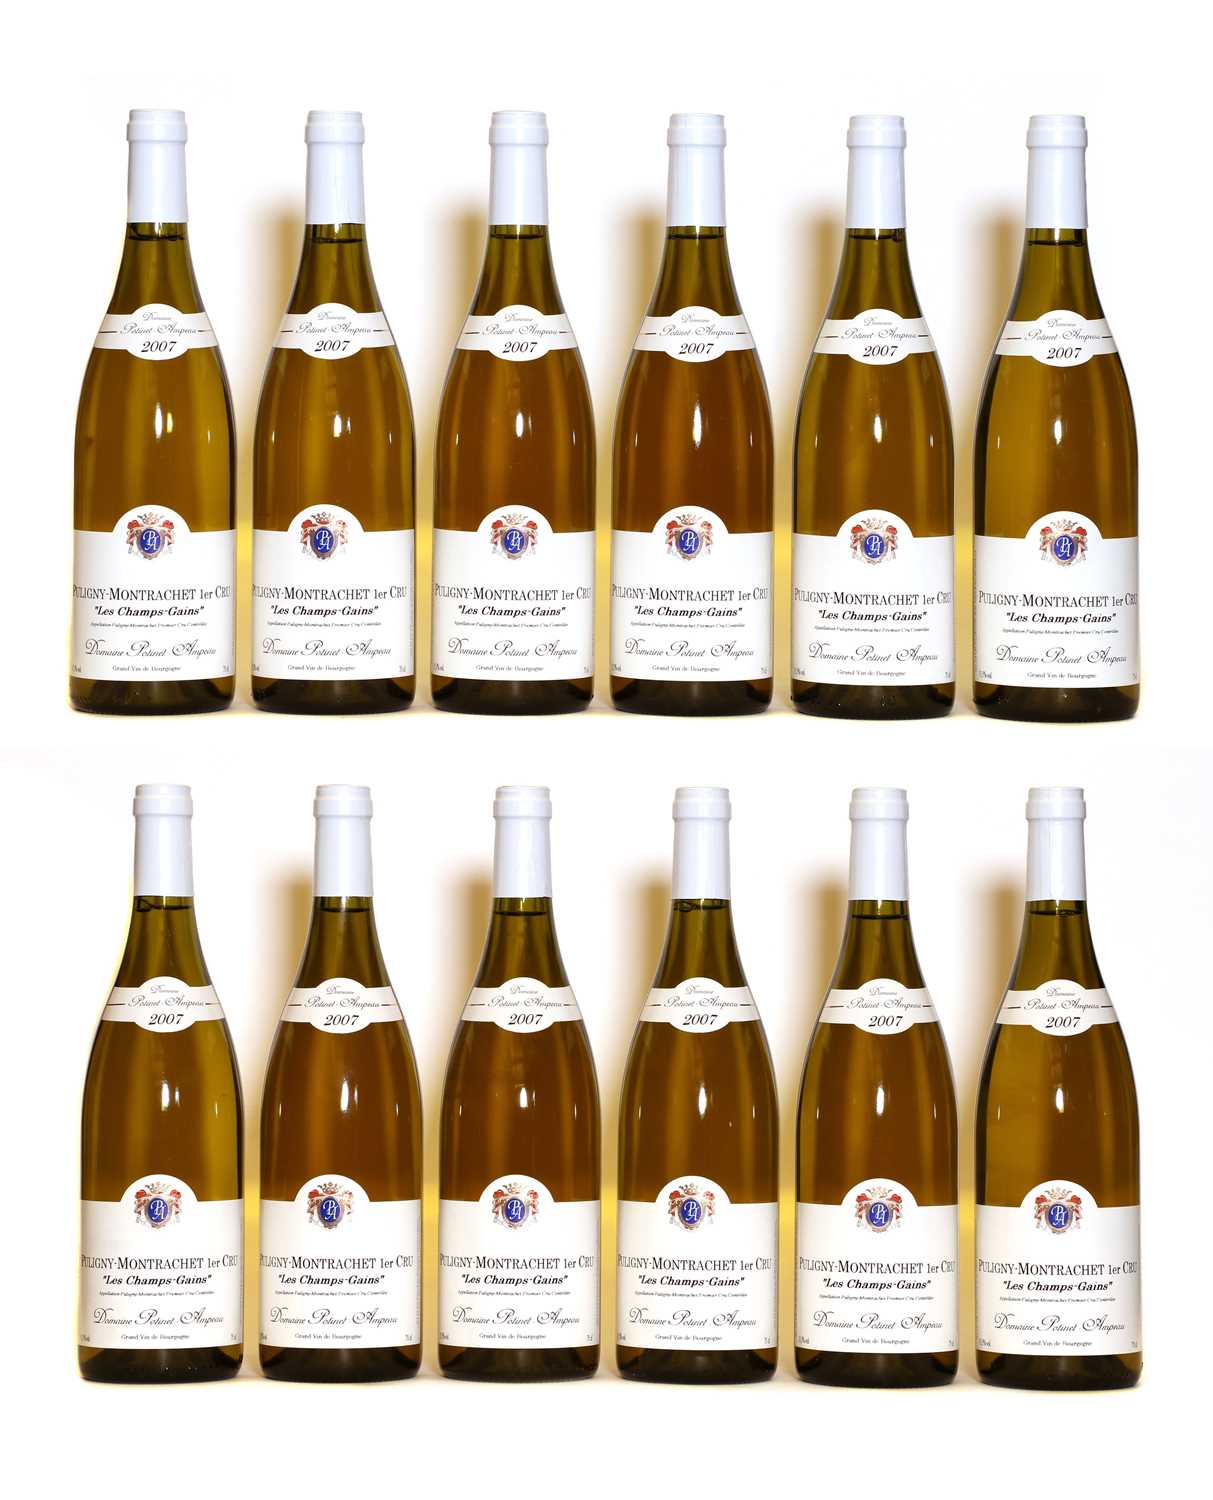 Lot 42 - Puligny Montrachet, 1er Cru, Les Champs Gains, Domaine Potinet Ampeau, 2007, twelve bottles (boxed)